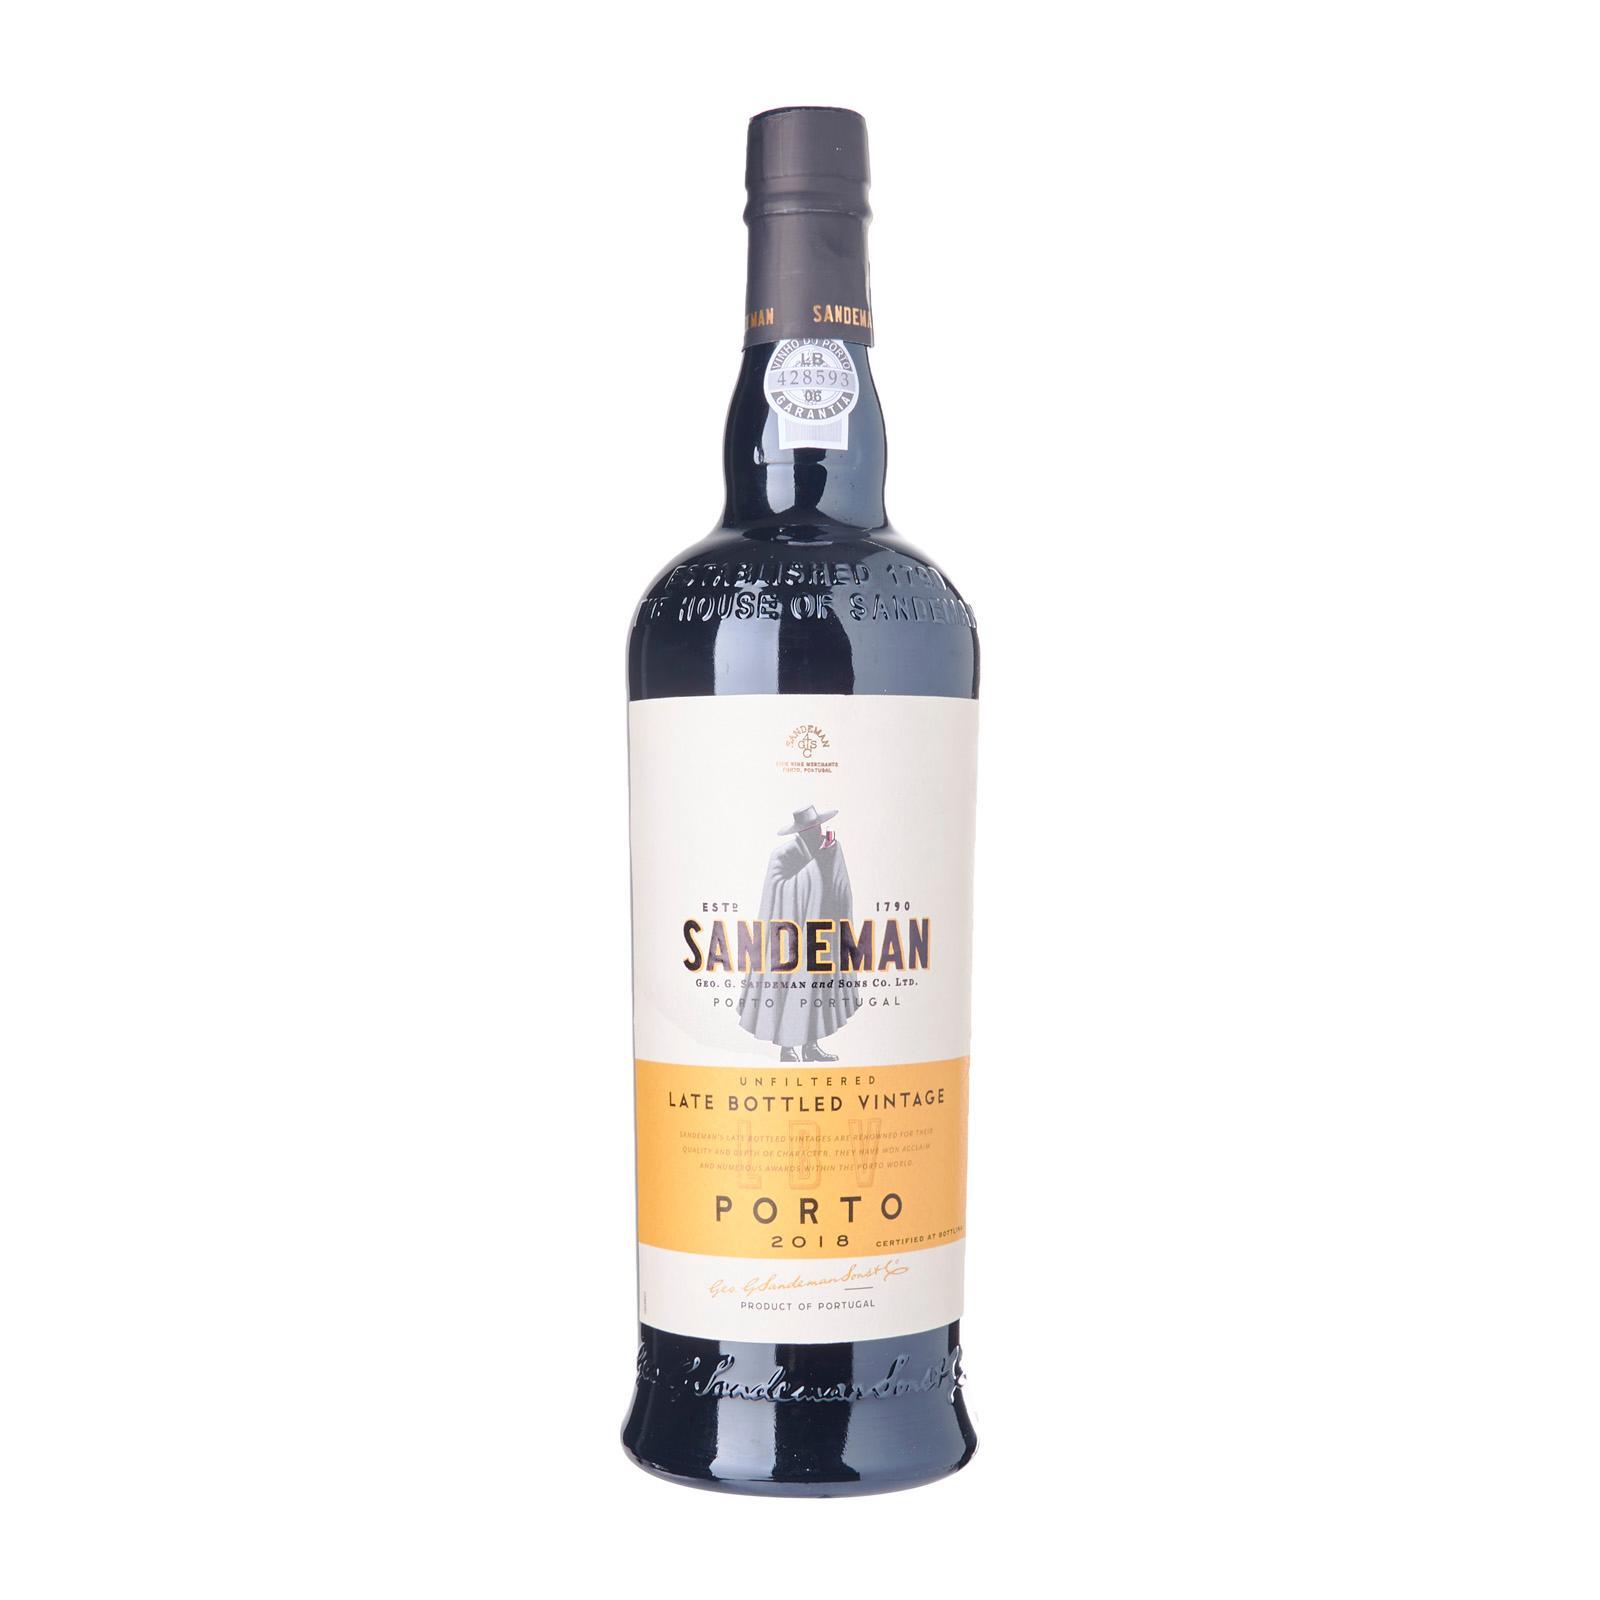 Sandeman Porto Late Bottled Vintage 2018 Port Wine – Portugal